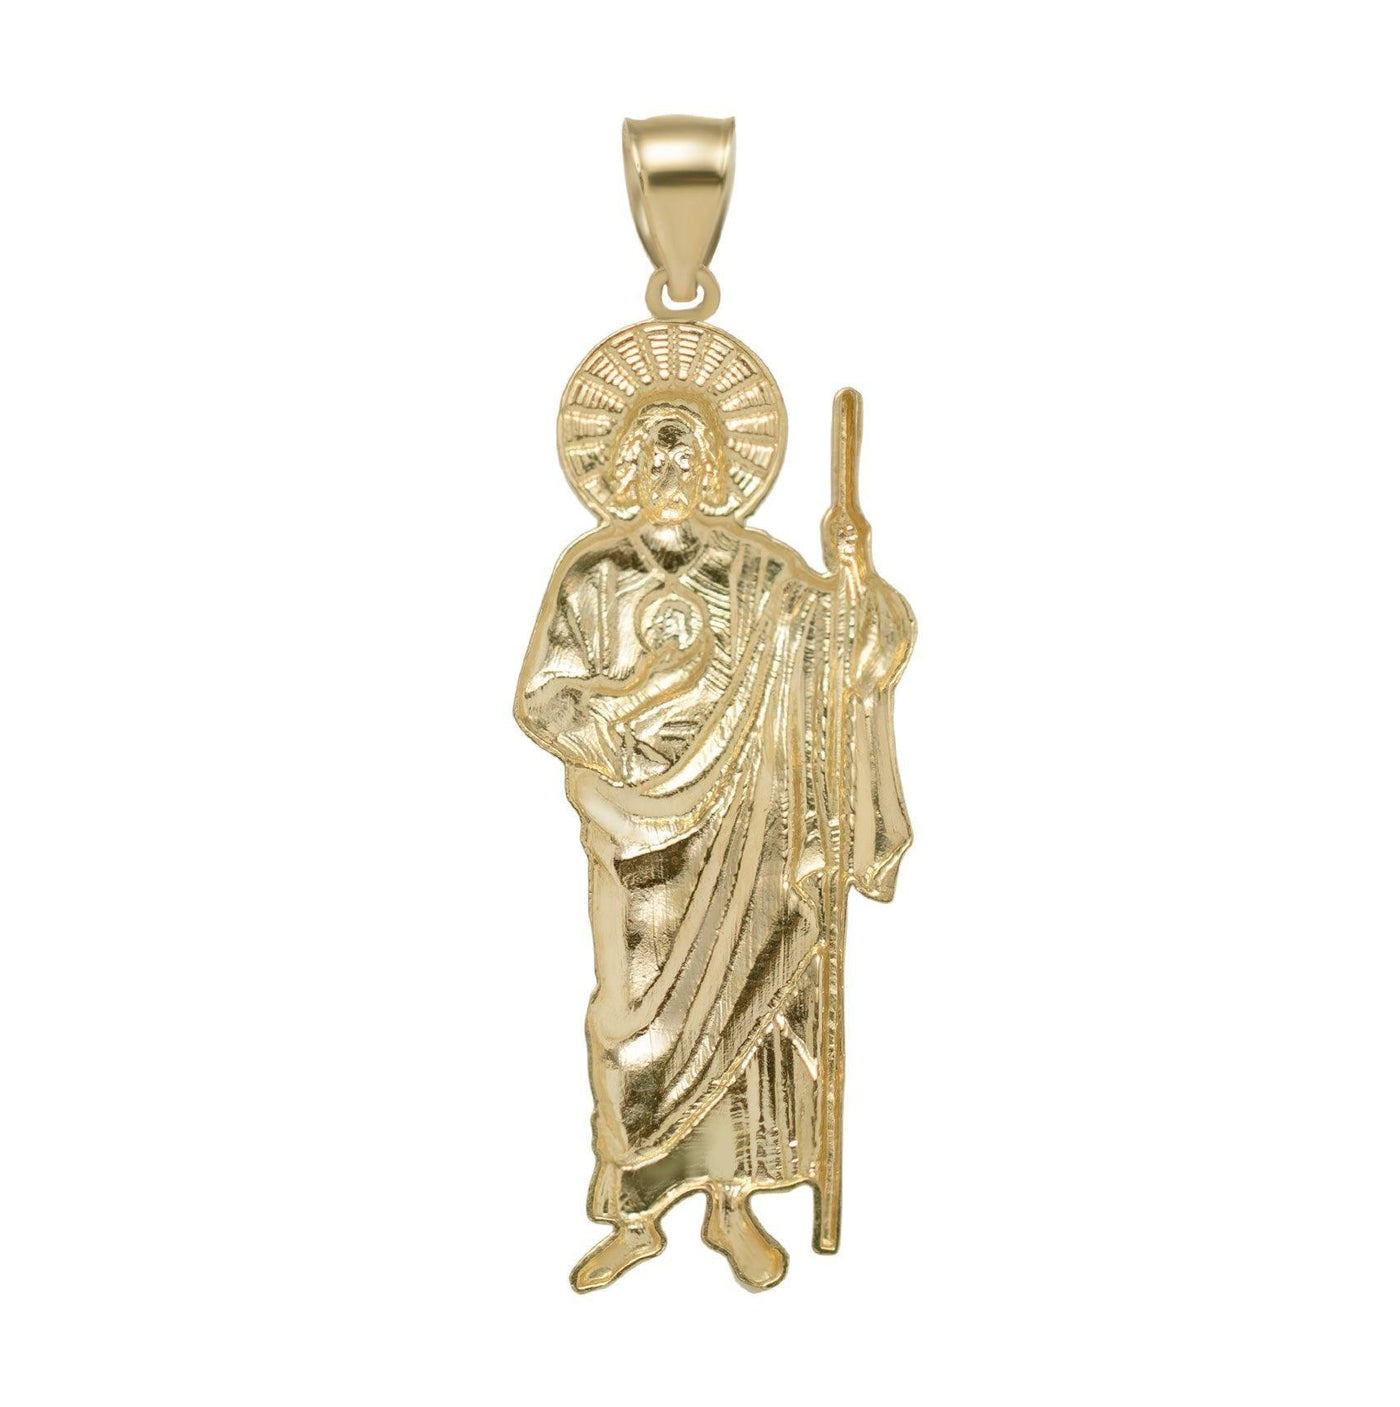 2 1/4" Saint Jude with Halo Diamond Cut Pendant Solid 10K Yellow Gold - bayamjewelry